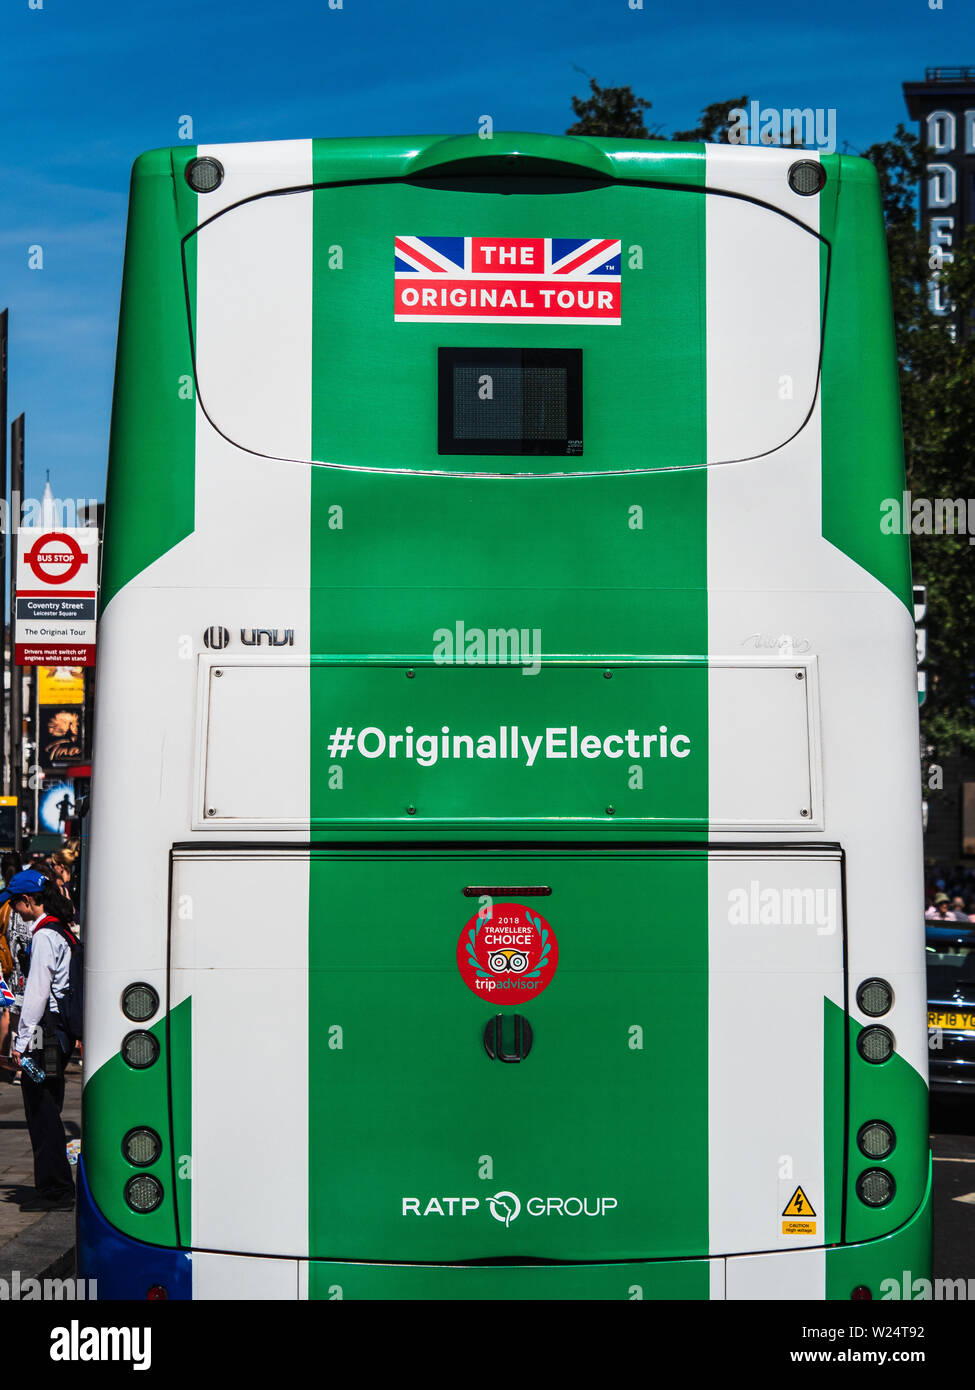 Bus touristique Eectric à 100% Londres - le bus touristique écologique d'origine London Tour Electric - un bus à toit ouvert alimenté uniquement par l'électricité. Banque D'Images